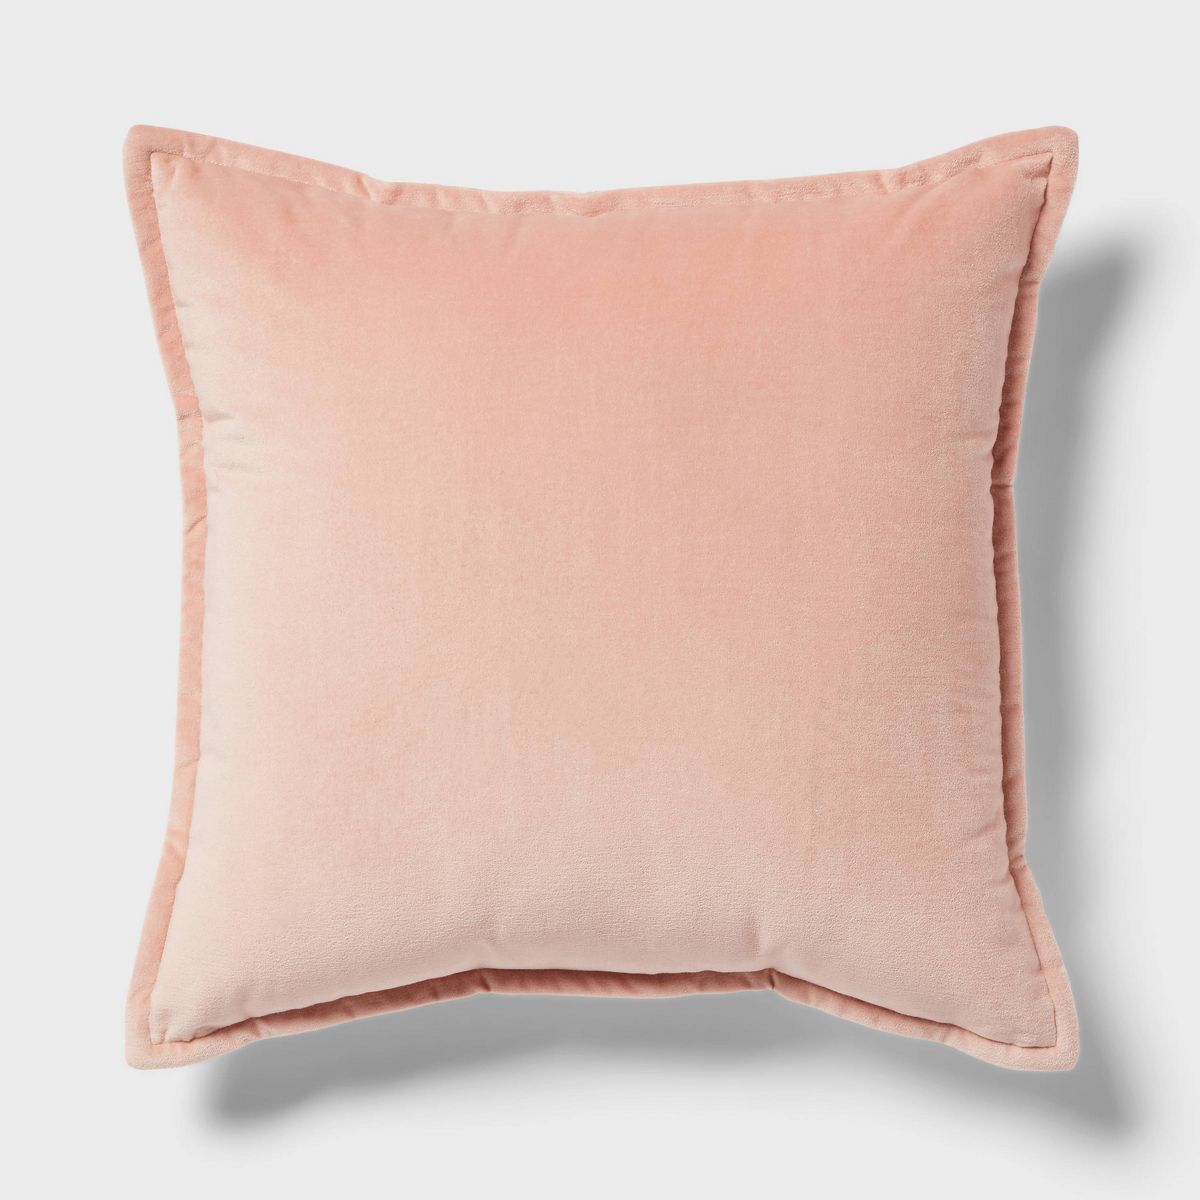 Trad Cotton Velvet with Linen Reverse Oblong Dec Pillow Light Terracotta - Threshold™ | Target